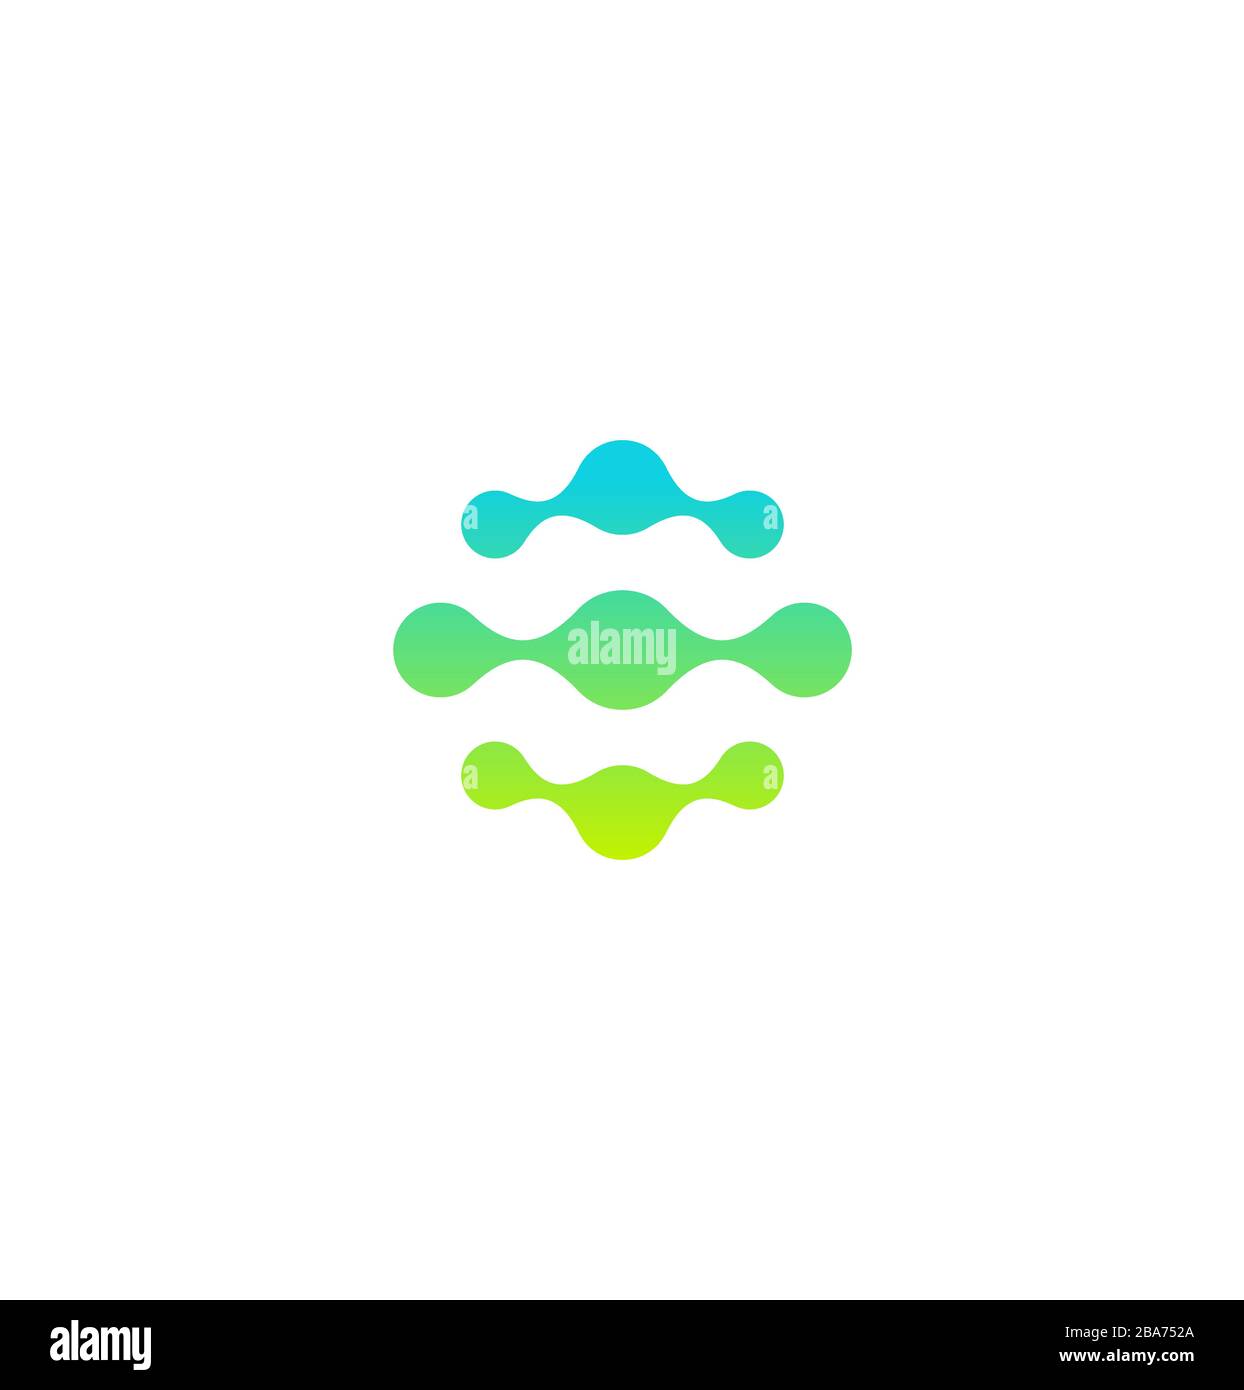 Abstraktes Molekül- oder Netzwerksymbol, grüne und blaue Verbindungskreise. Gestrichelte Logo-Vorlage, flaches abstraktes Emblem. Konzept Logotyp Design for Business Stock Vektor